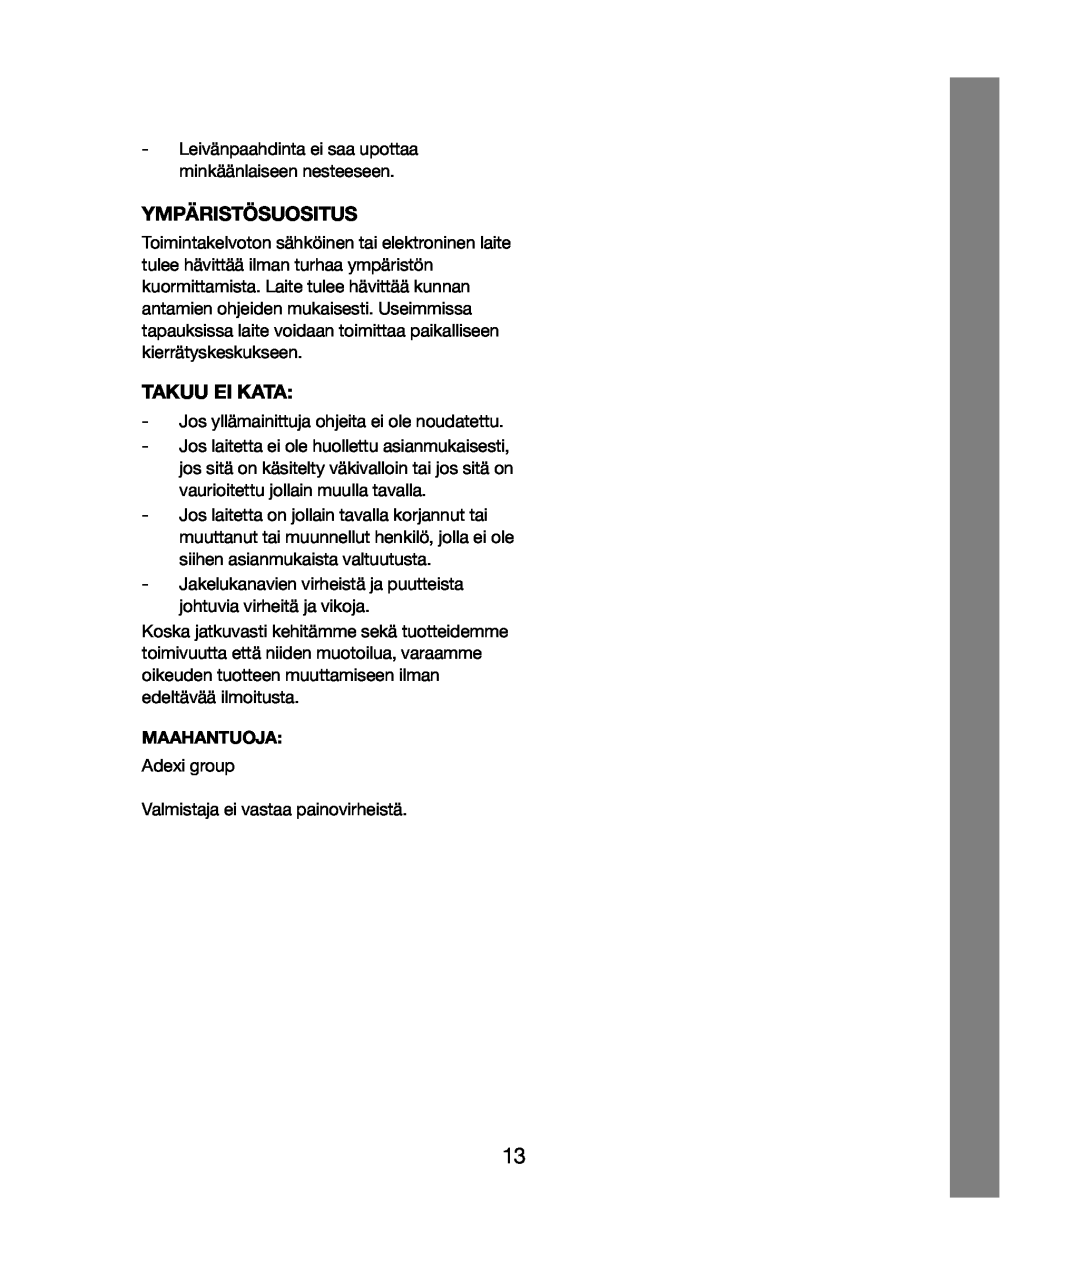 Melissa 243-020 manual Ympäristösuositus, Takuu Ei Kata, Maahantuoja 